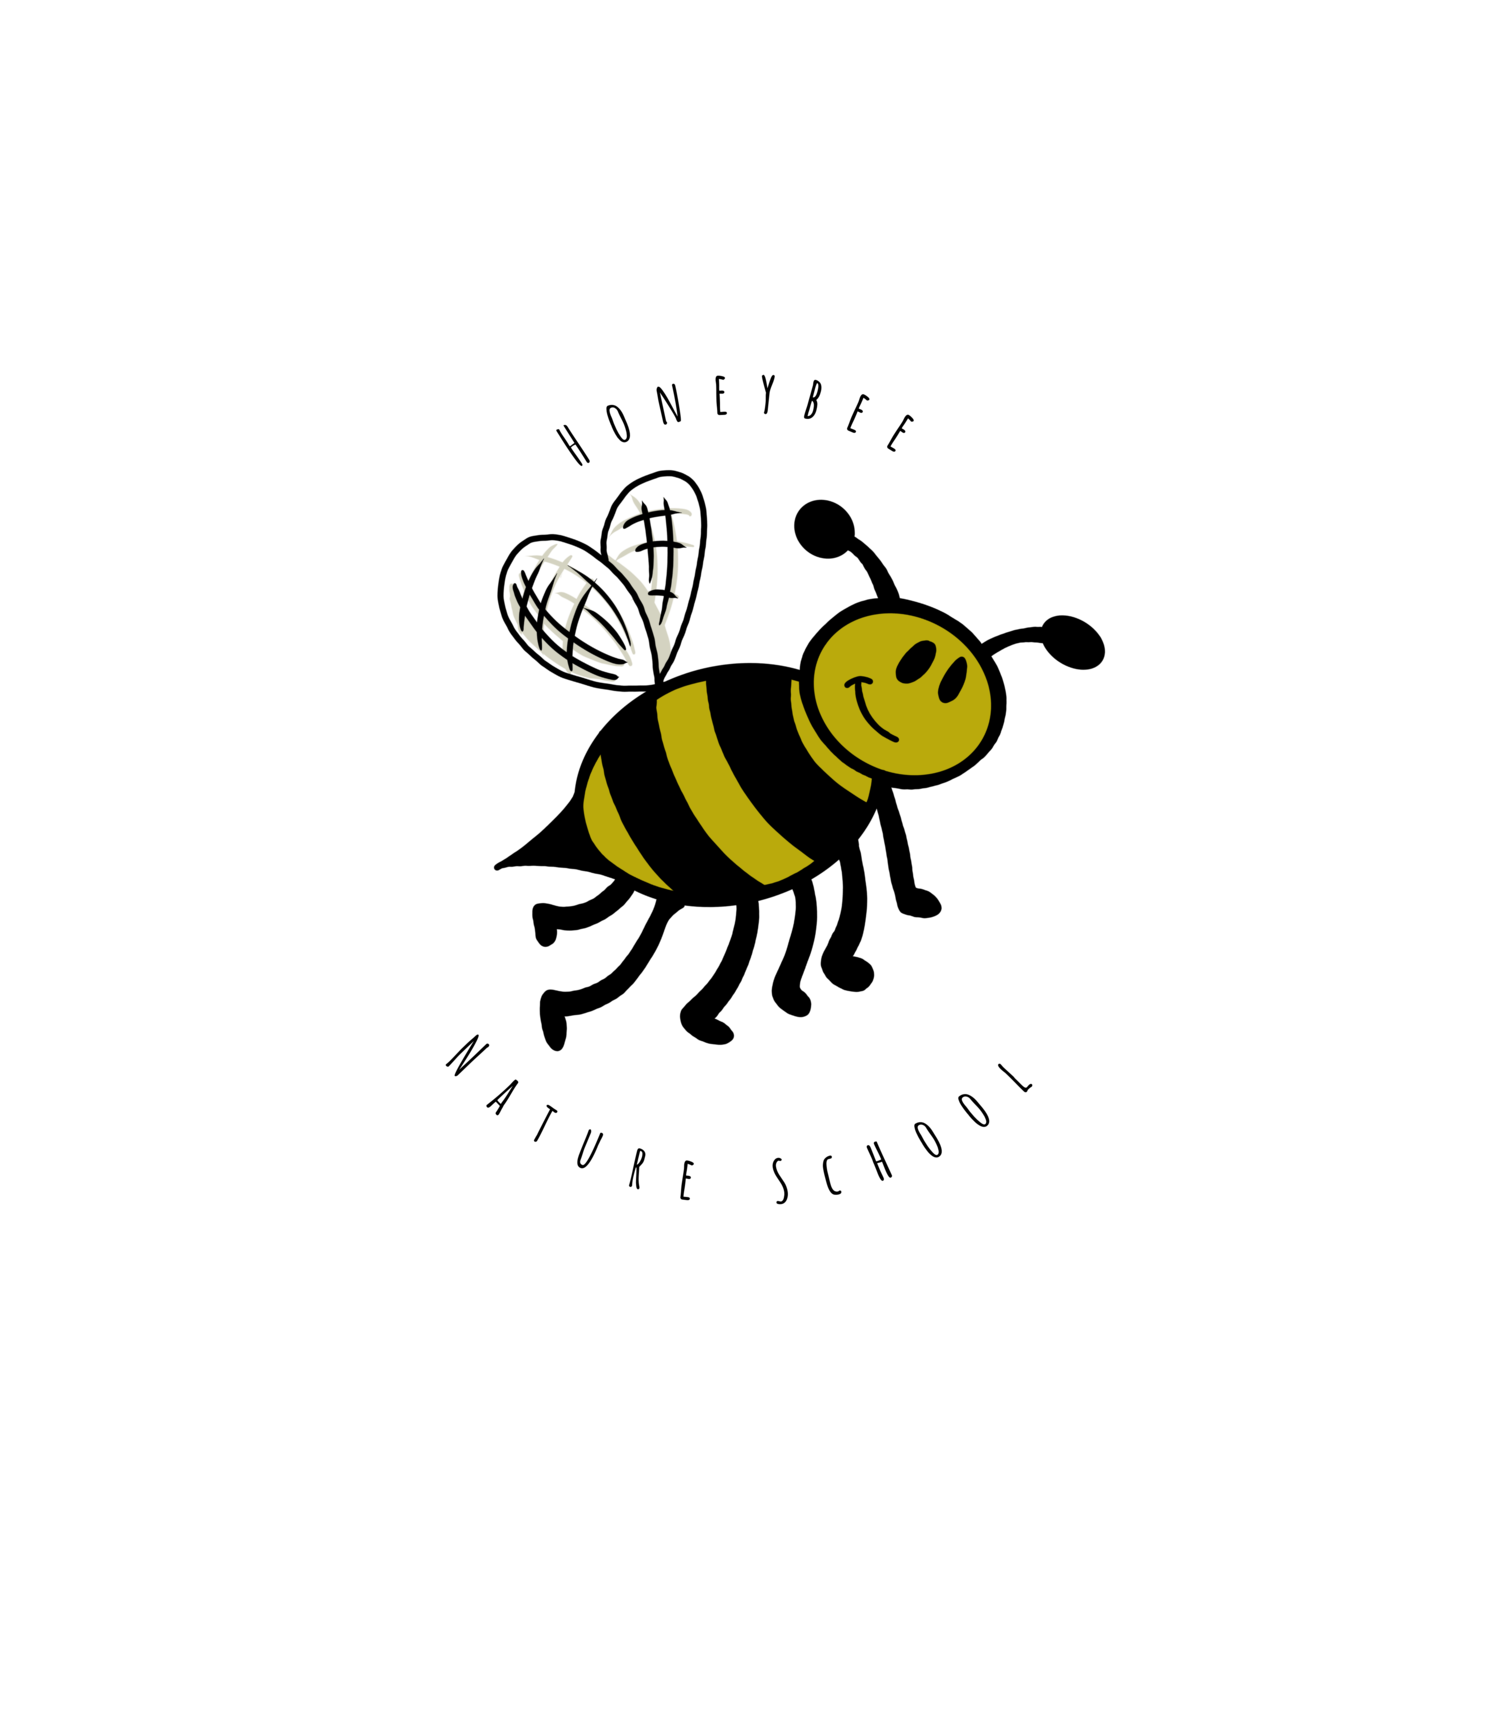 Honeybee Nature School